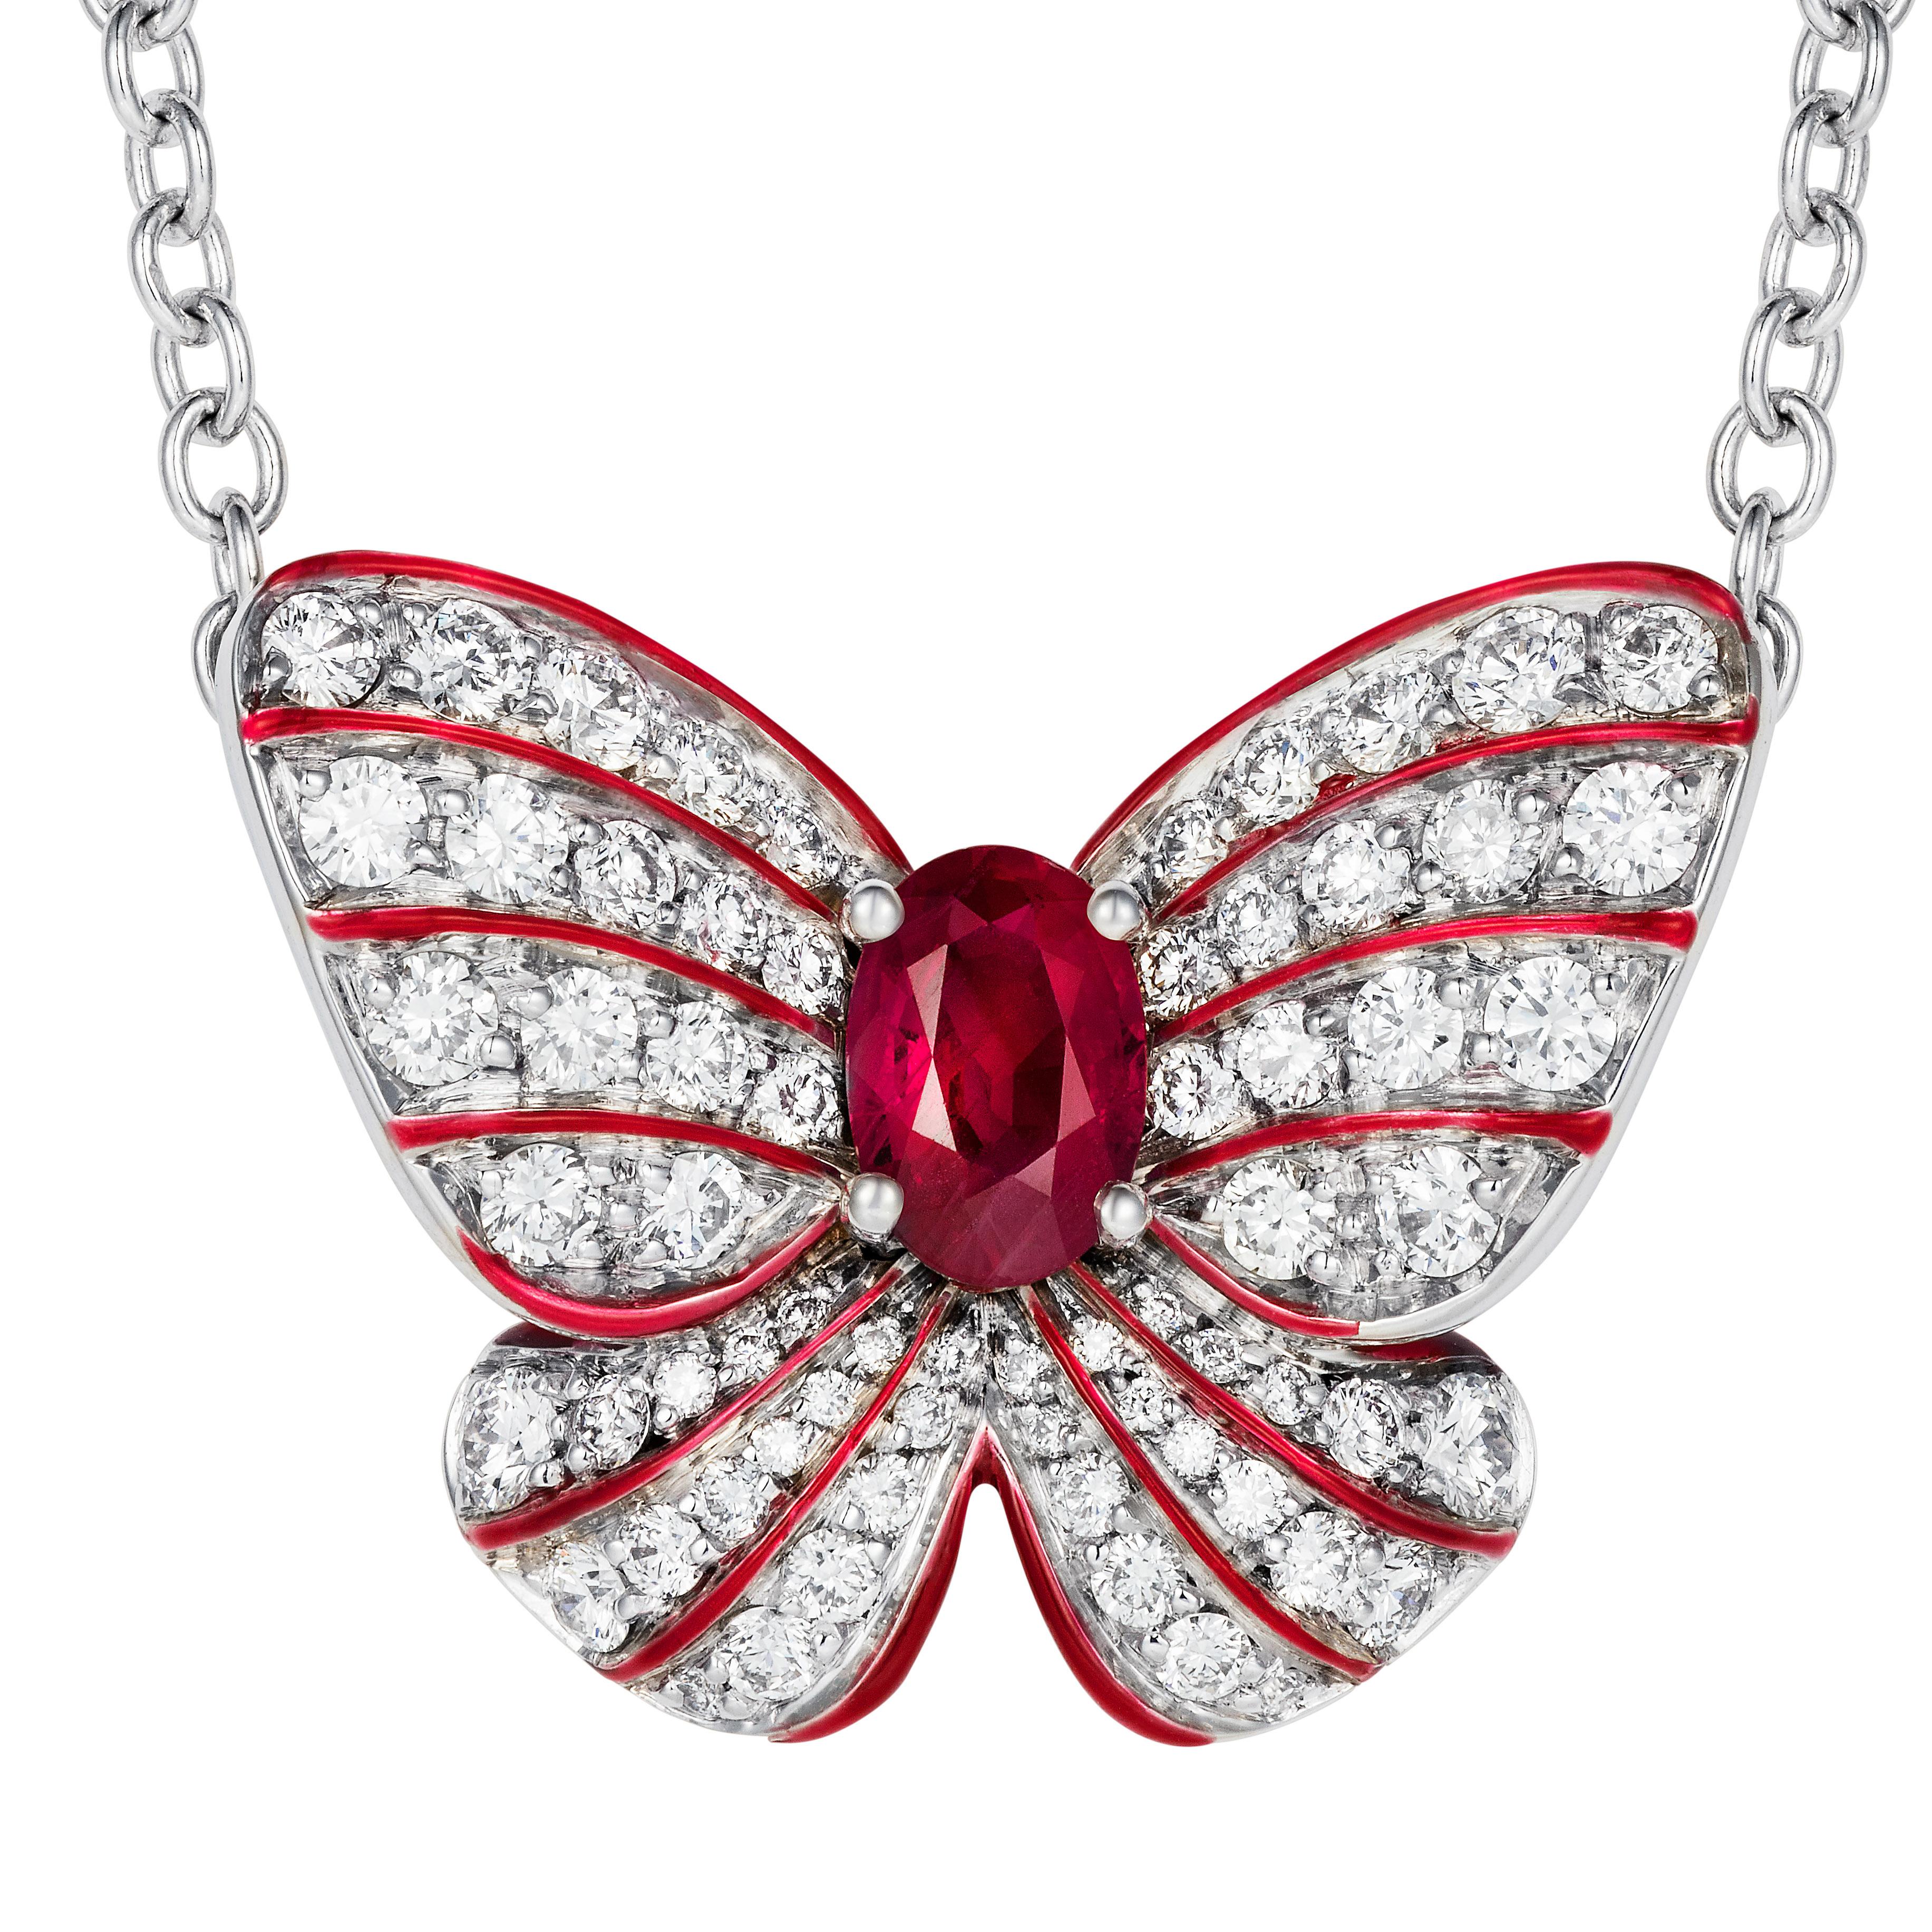 Un magnifique rubis est serti au cœur d'un pendentif papillon stylisé serti de diamants ronds avec de fines touches d'émail rouge.

- Rubis ovale de 0,50 carat
- 66 diamants blancs totalisant 0,73 carats
- Créée en or blanc 18 carats, faite à la